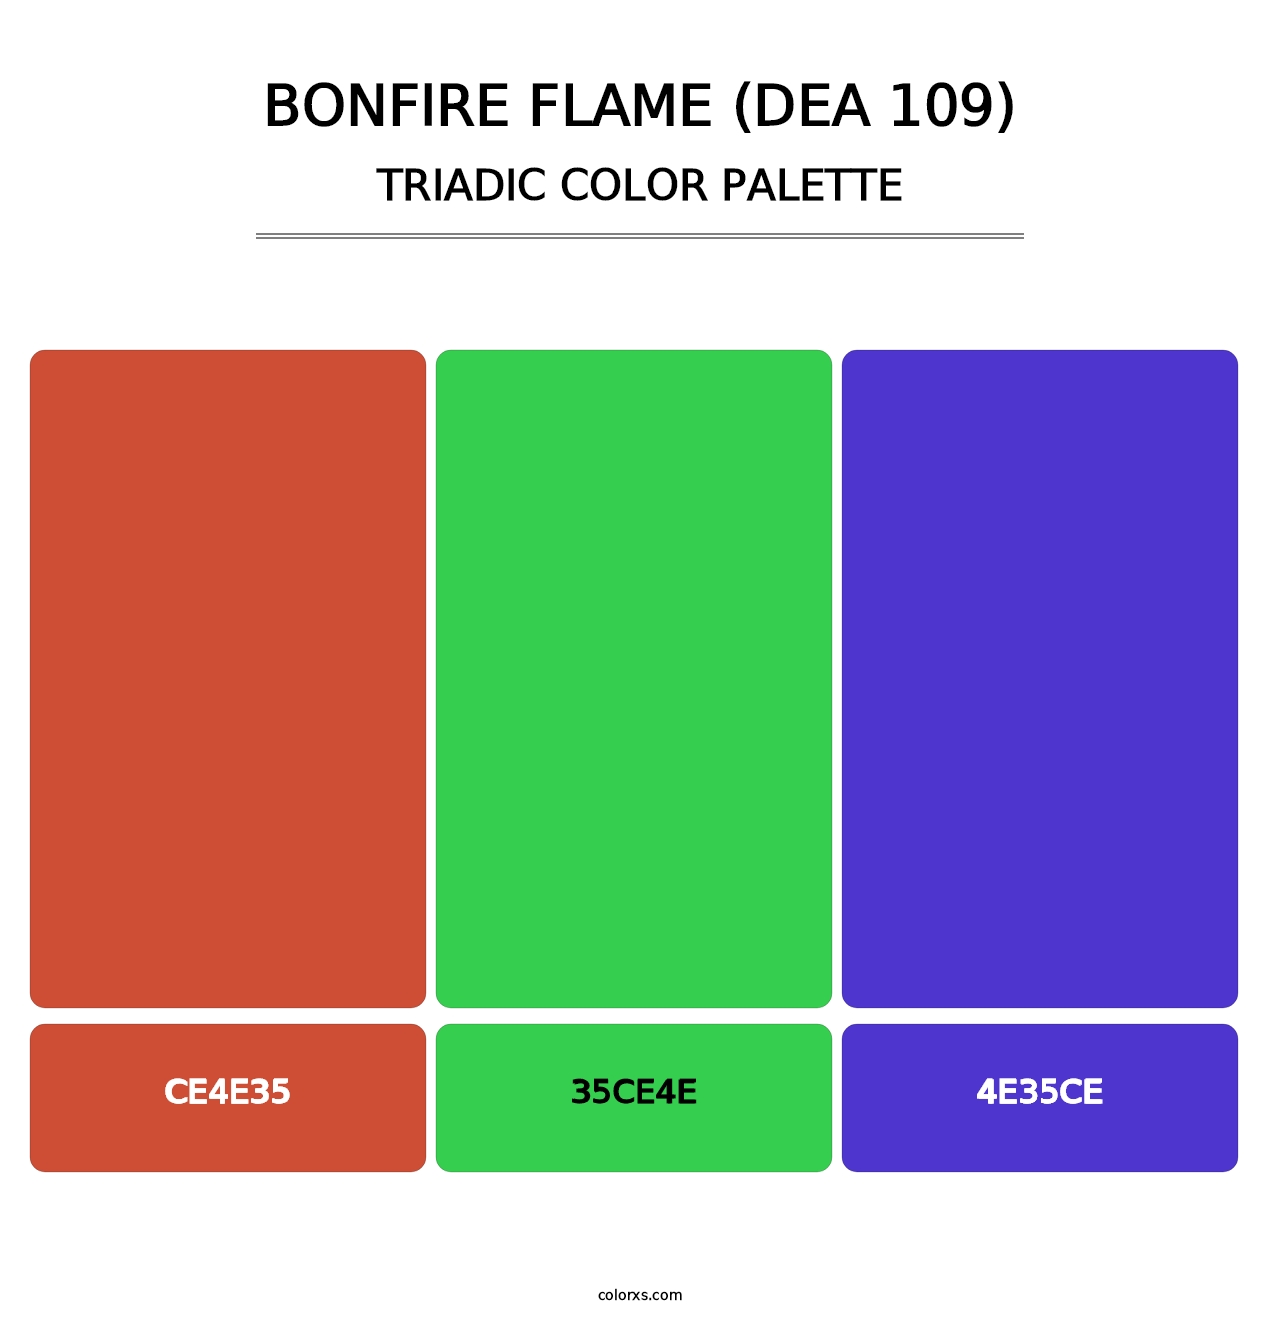 Bonfire Flame (DEA 109) - Triadic Color Palette